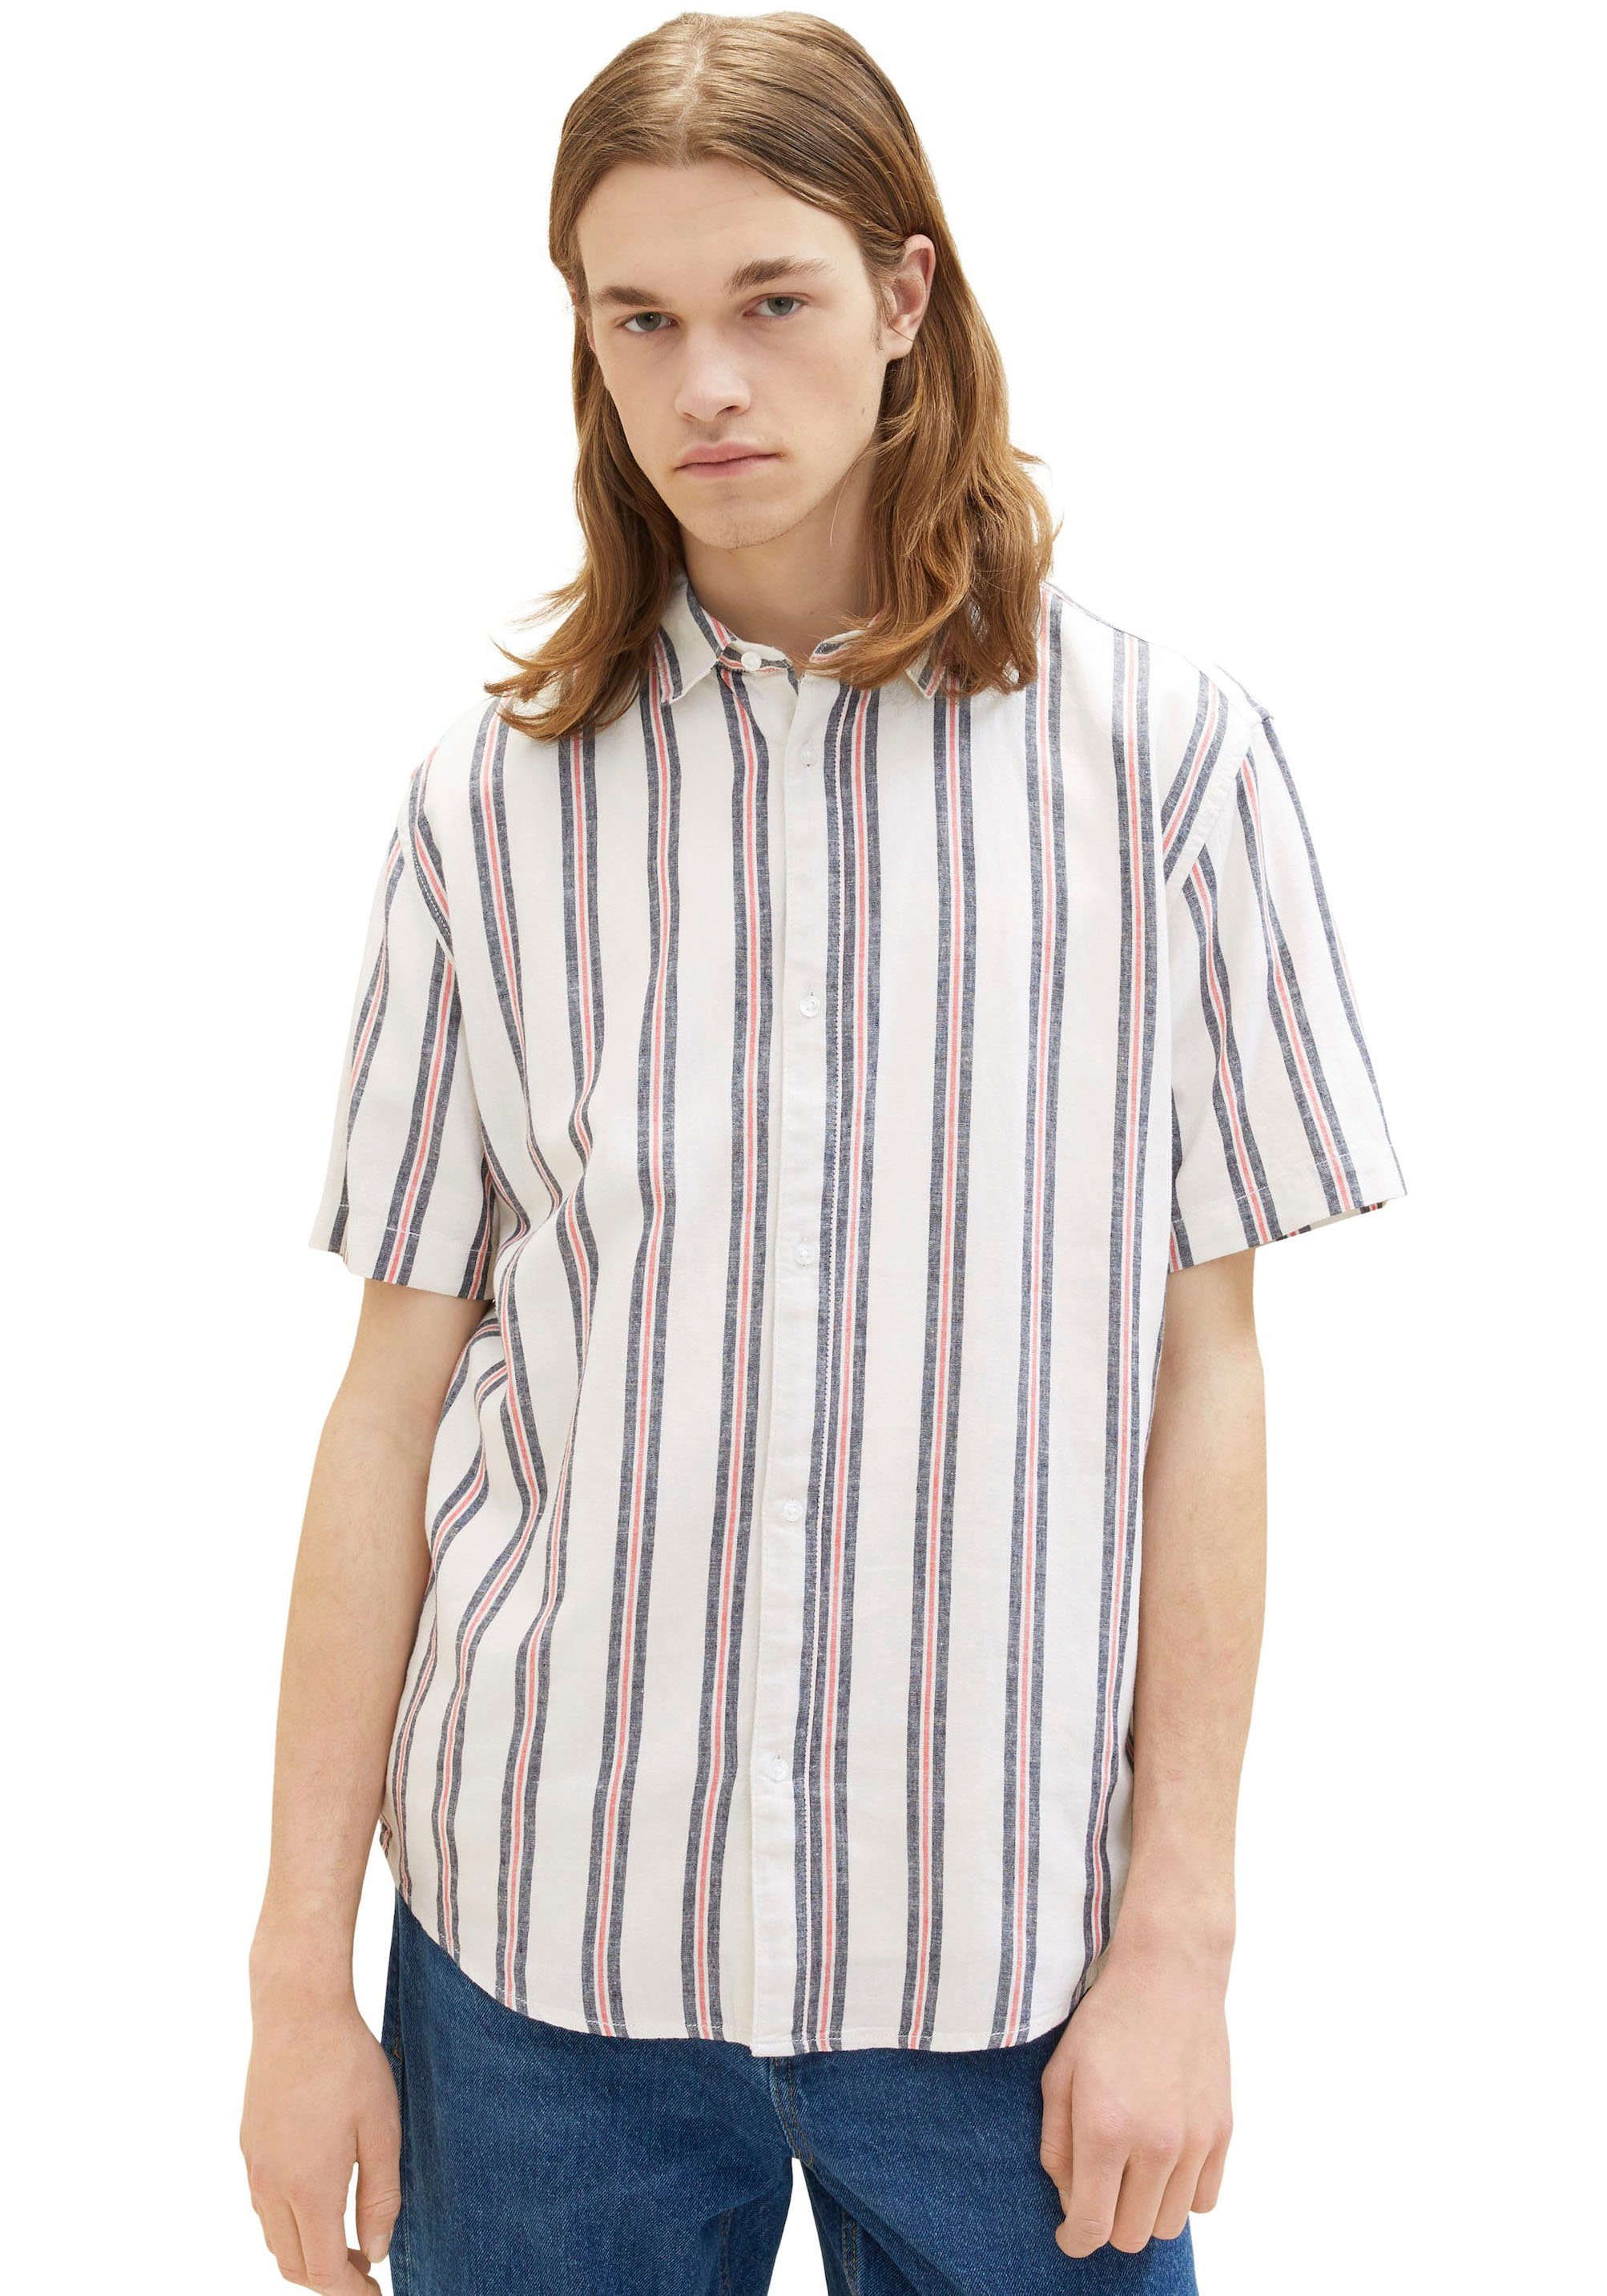 TOM TAILOR Denim Streifenhemd mit kurzen Ärmeln weiß blau | Hemden